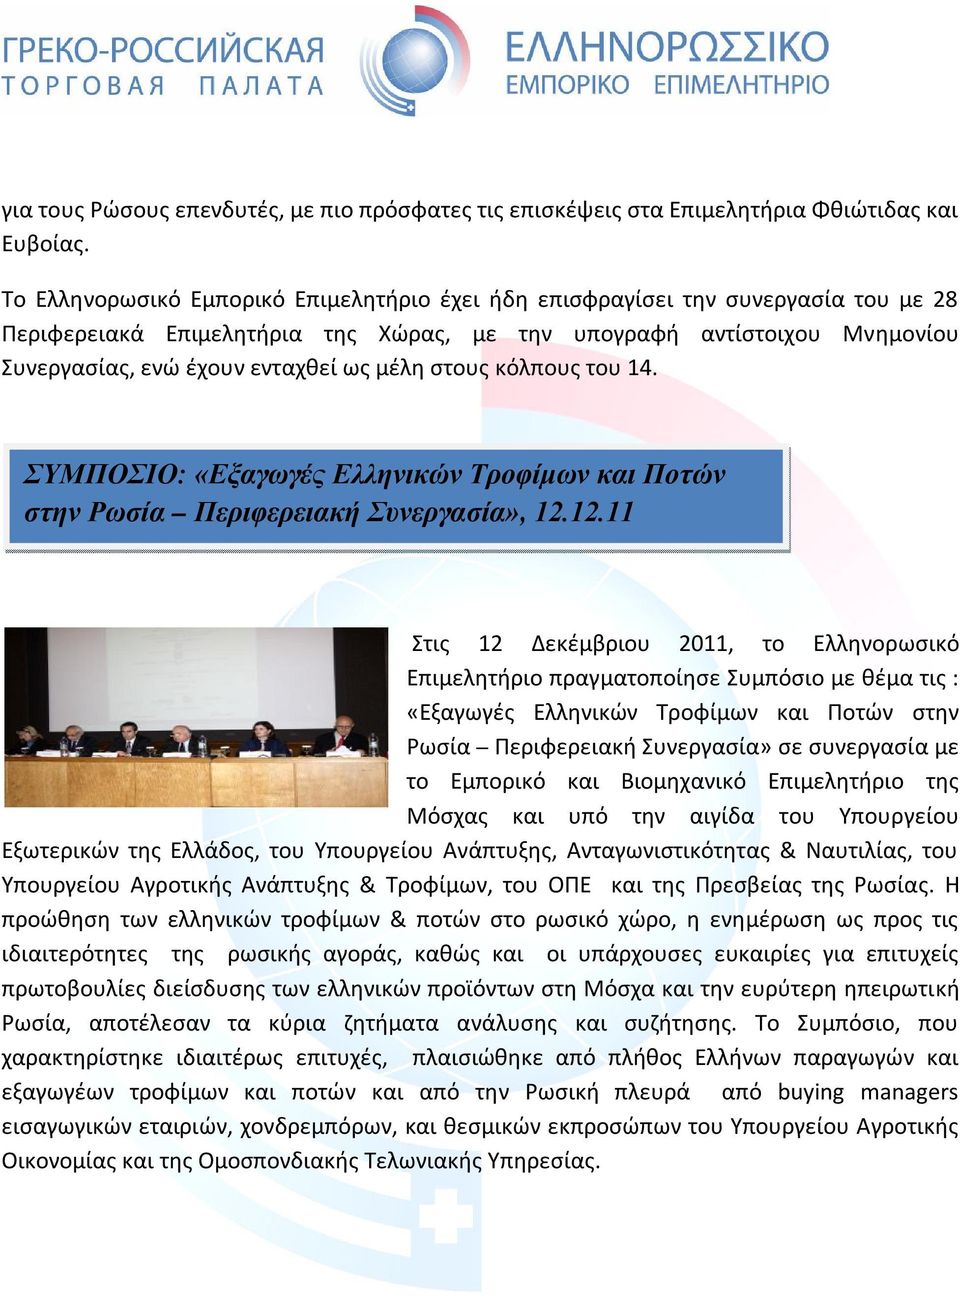 στους κόλπους του 14. ΣΥΜΠΟΣΙΟ: «Εξαγωγές Ελληνικών Τροφίμων και Ποτών στην Ρωσία Περιφερειακή Συνεργασία», 12.